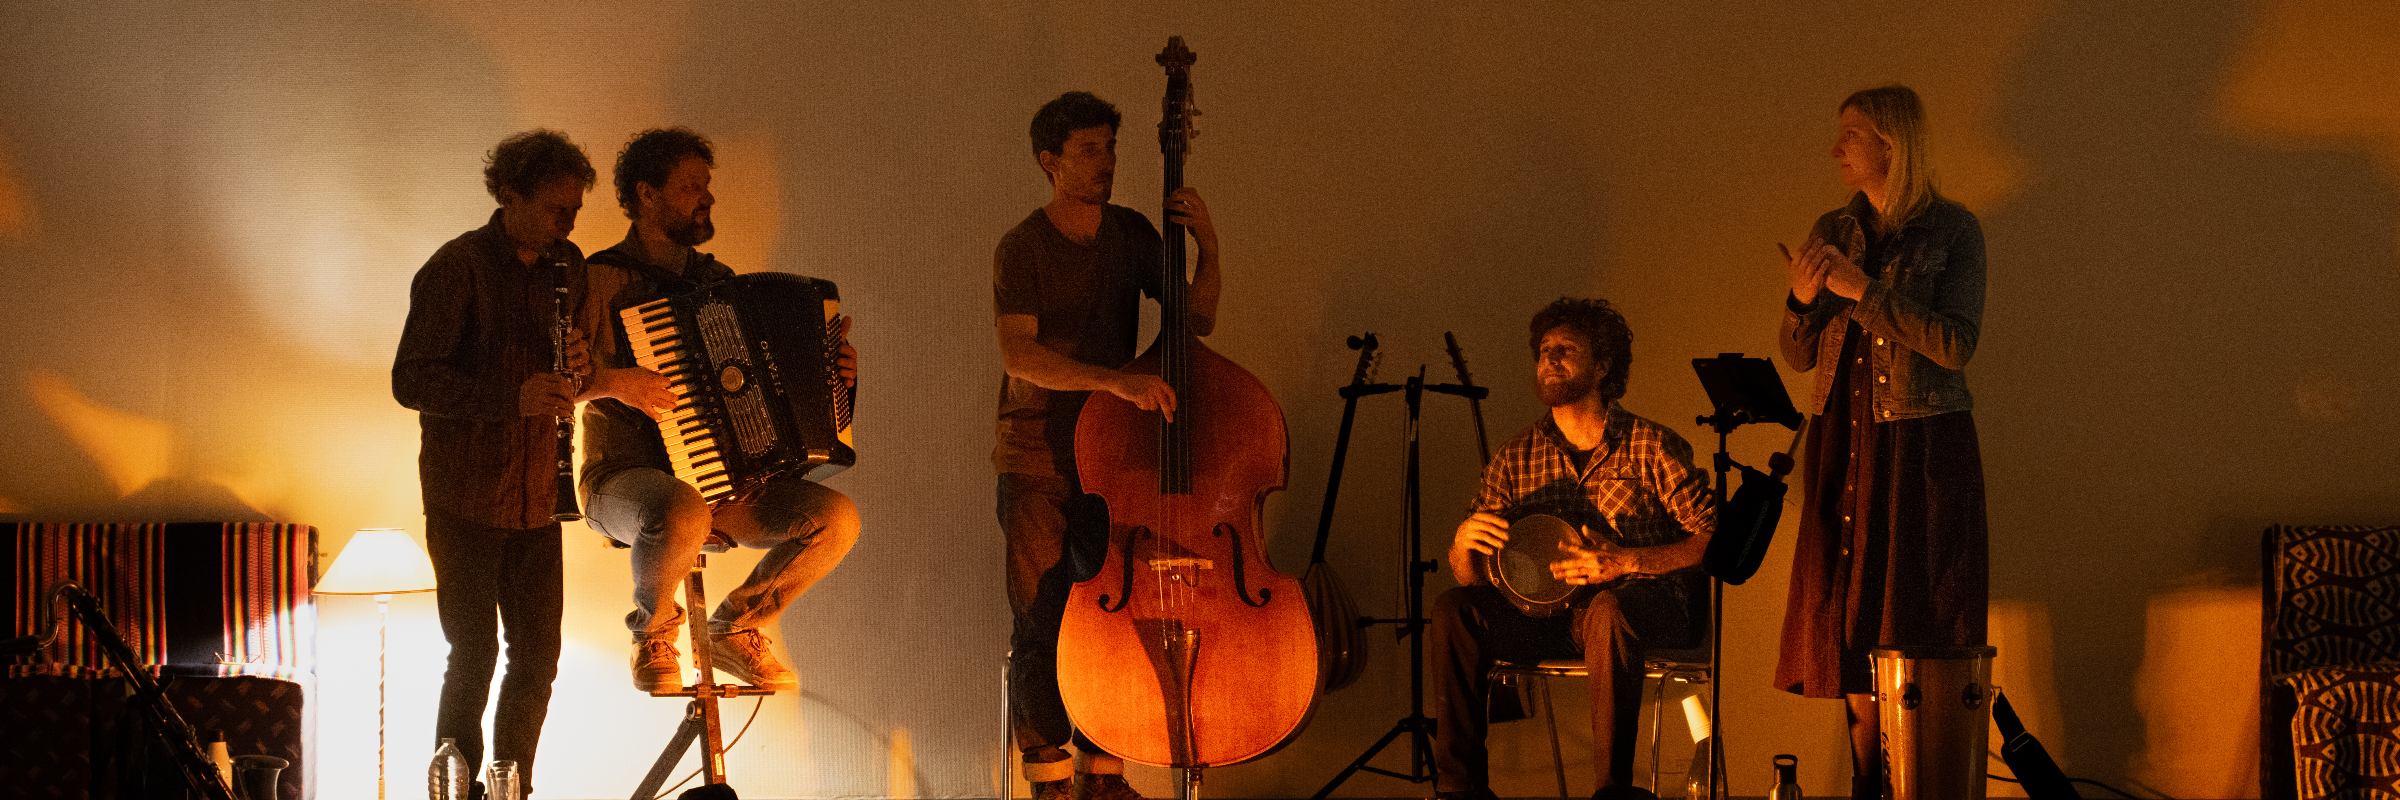 Le Quintet De Pioche, groupe de musique Musiques du monde en représentation à Vaucluse - photo de couverture n° 1